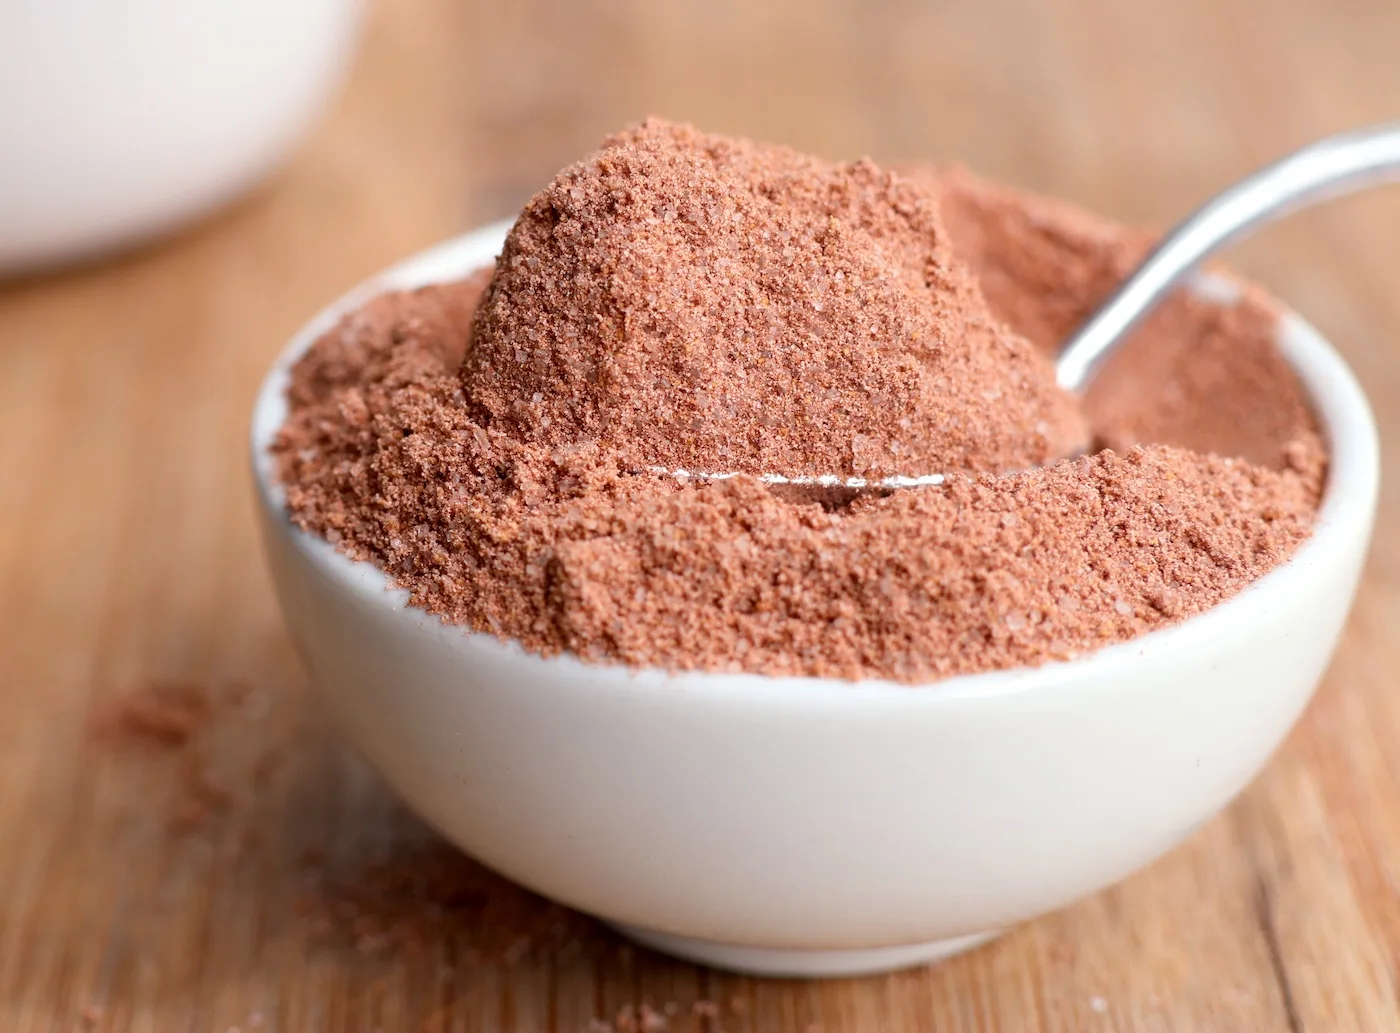 Hot-chocolate-powder-in-a-ceramic-dish